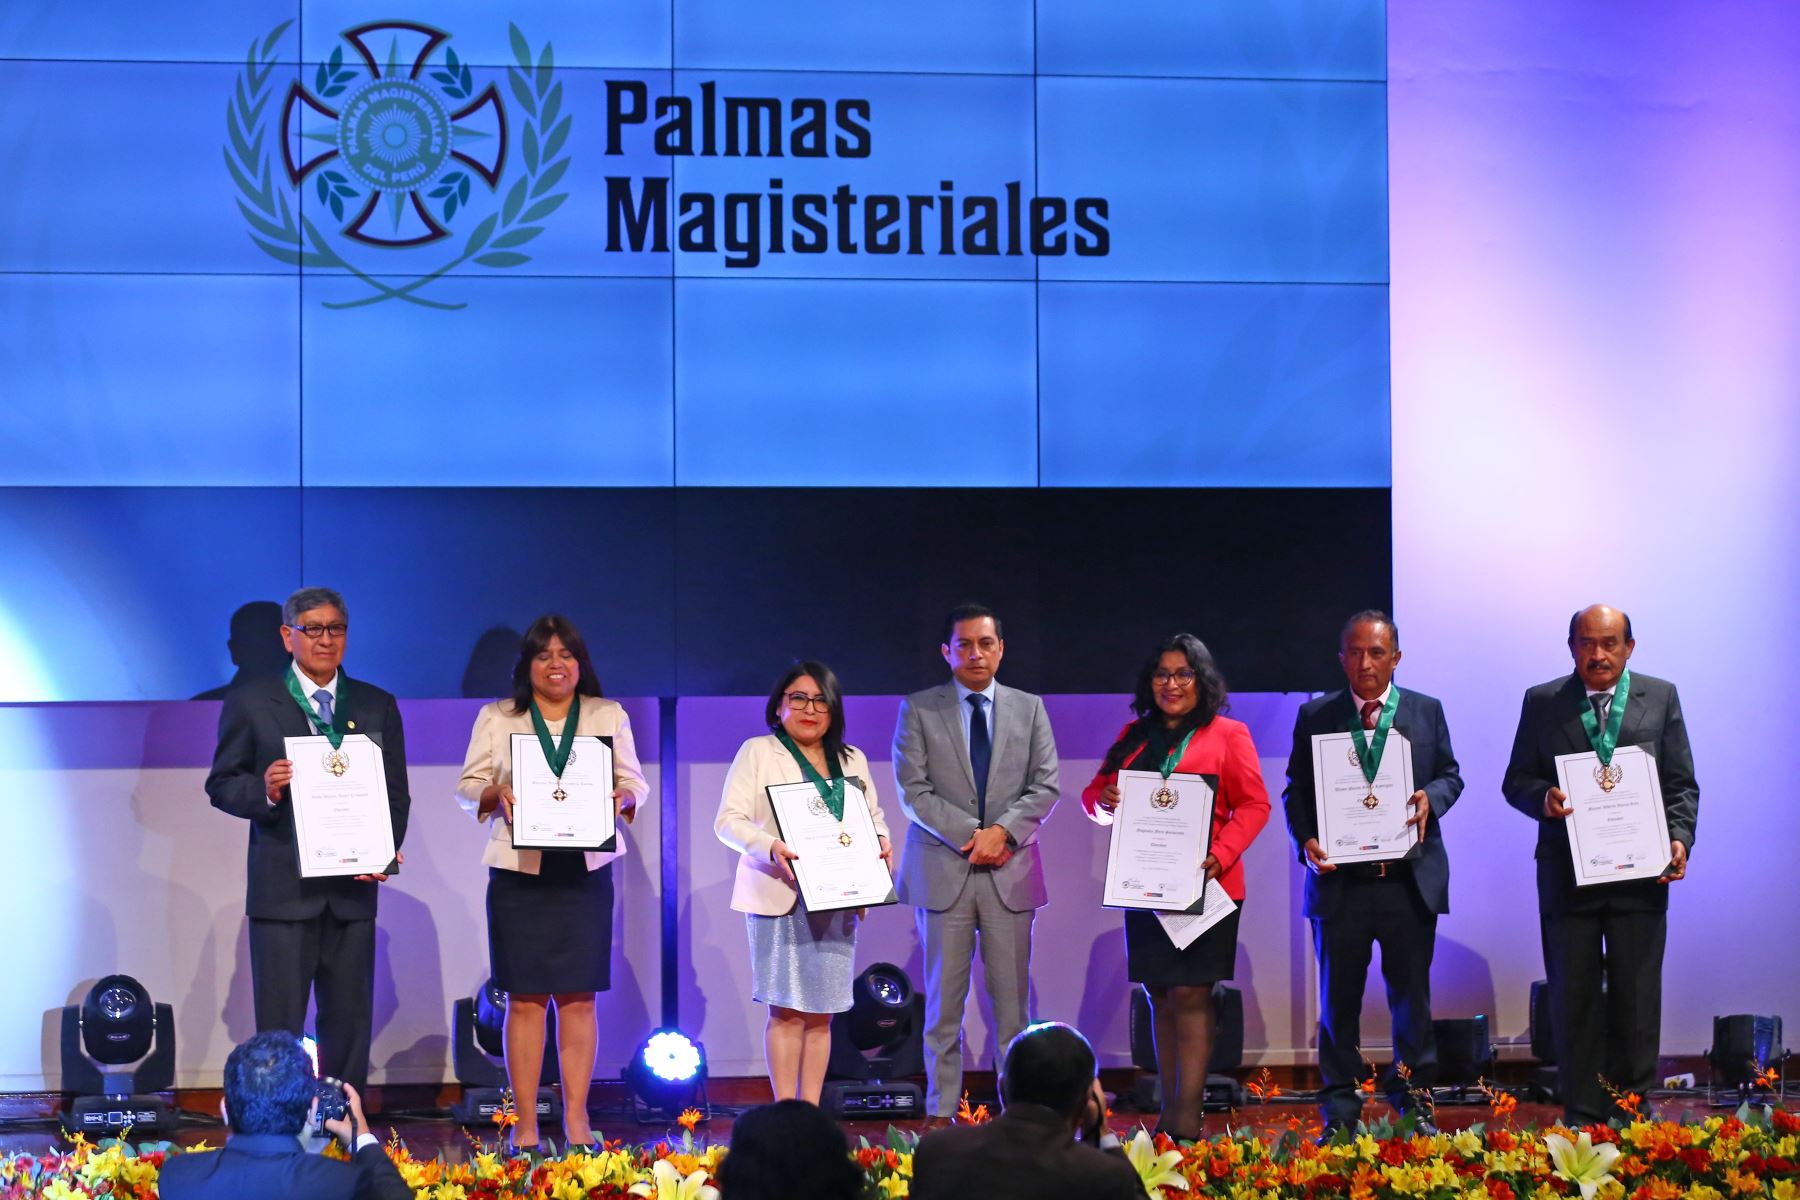 El Ministerio de Educación entrega las Palmas Magisteriales 2022 a diez profesionales destacados que han contribuido con su trabajo e investigación a mejorar la educación en el país. 
Foto: ANDINA/Eddy Ramos